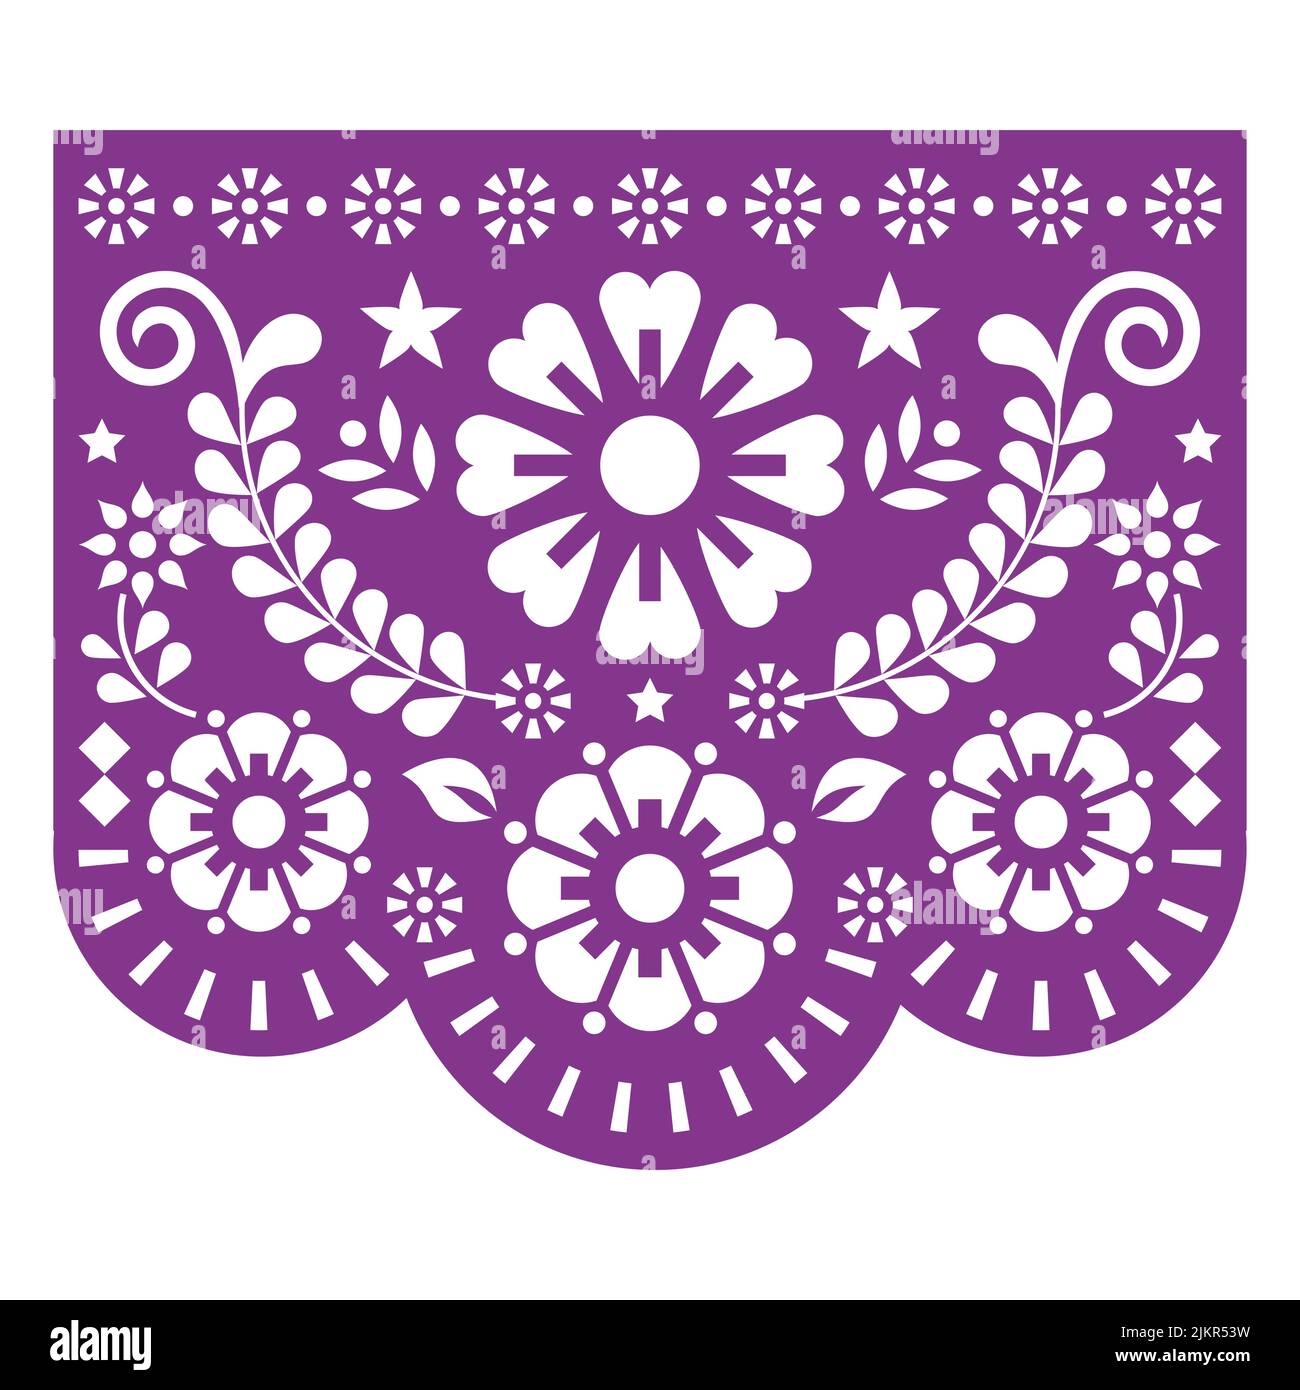 Papel Picado Vektor-Design inspiriert von der traditionellen ausgeschnittenen Dekoration aus Mexiko mit Blumen und geometrischen Formen - Grußkarte, Party-Dekor Stock Vektor